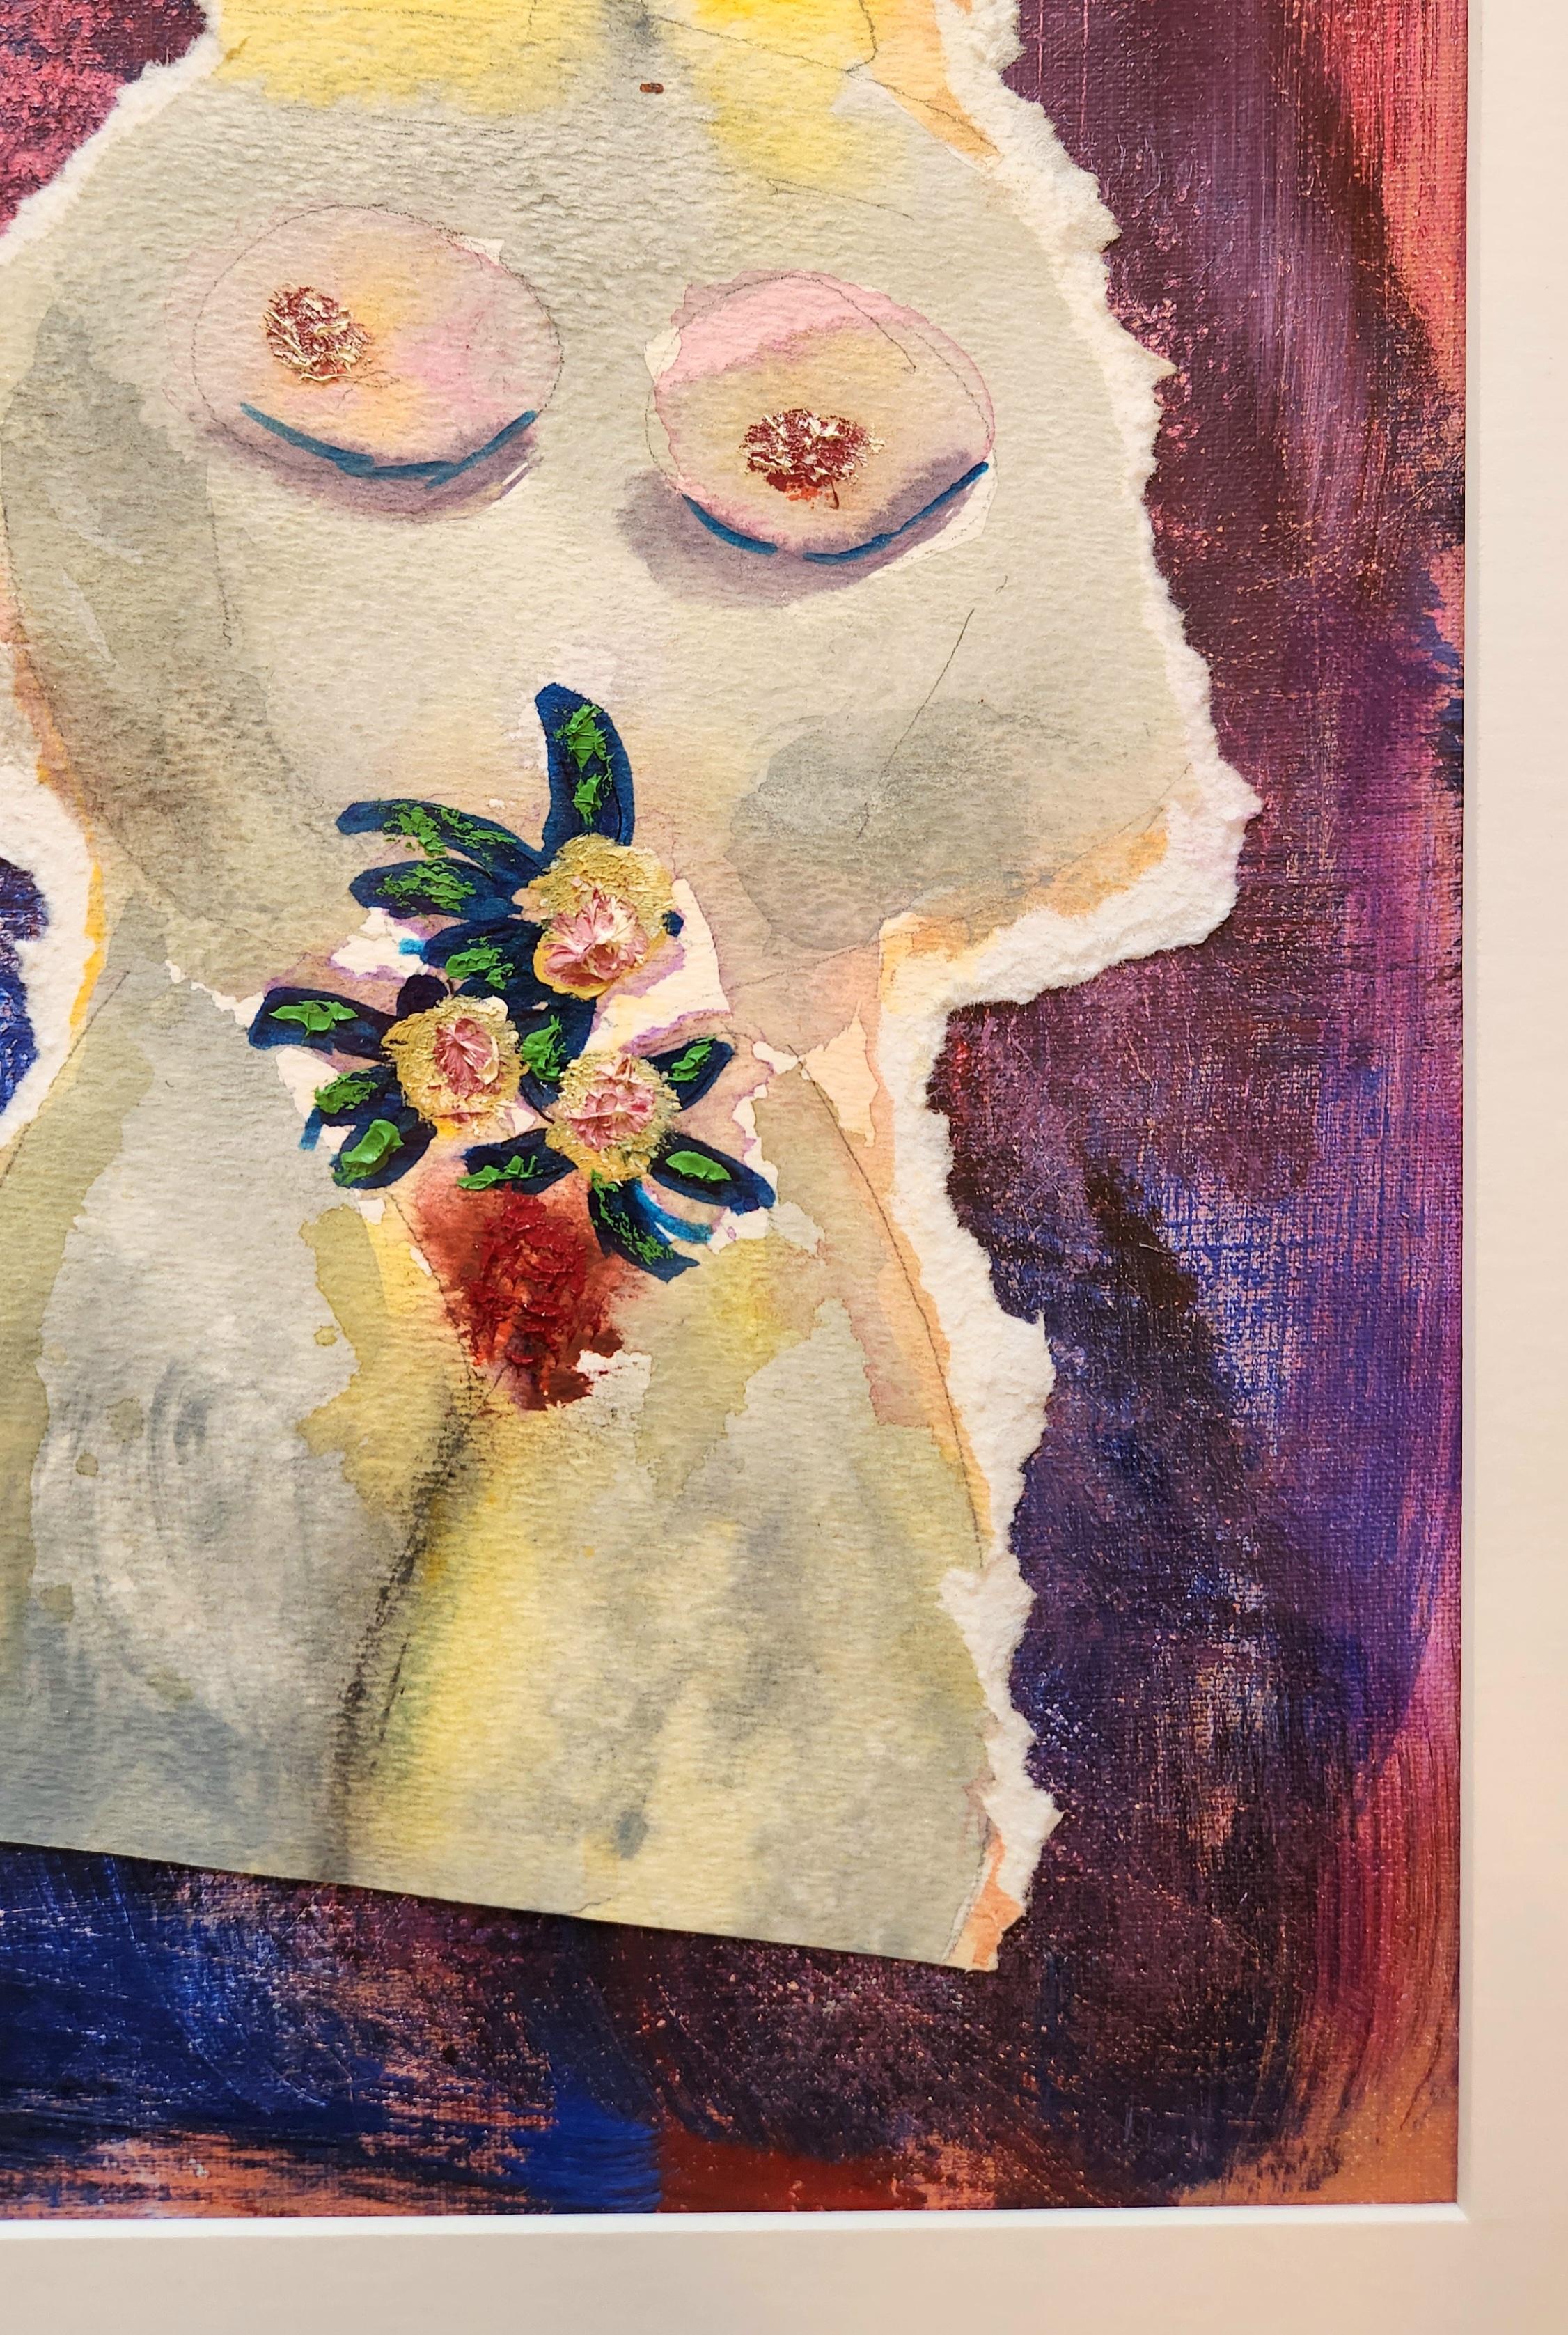 Dieses farbenfrohe Gemälde in Mischtechnik zeigt eine nackte Frau mit blondem Haar, die Blumen hält. Der Hintergrund des Gemäldes besteht aus einer Mischung aus Blau-, Lila-, Rosa- und Orangetönen, die dem Bild eine energischere Note verleihen. Das